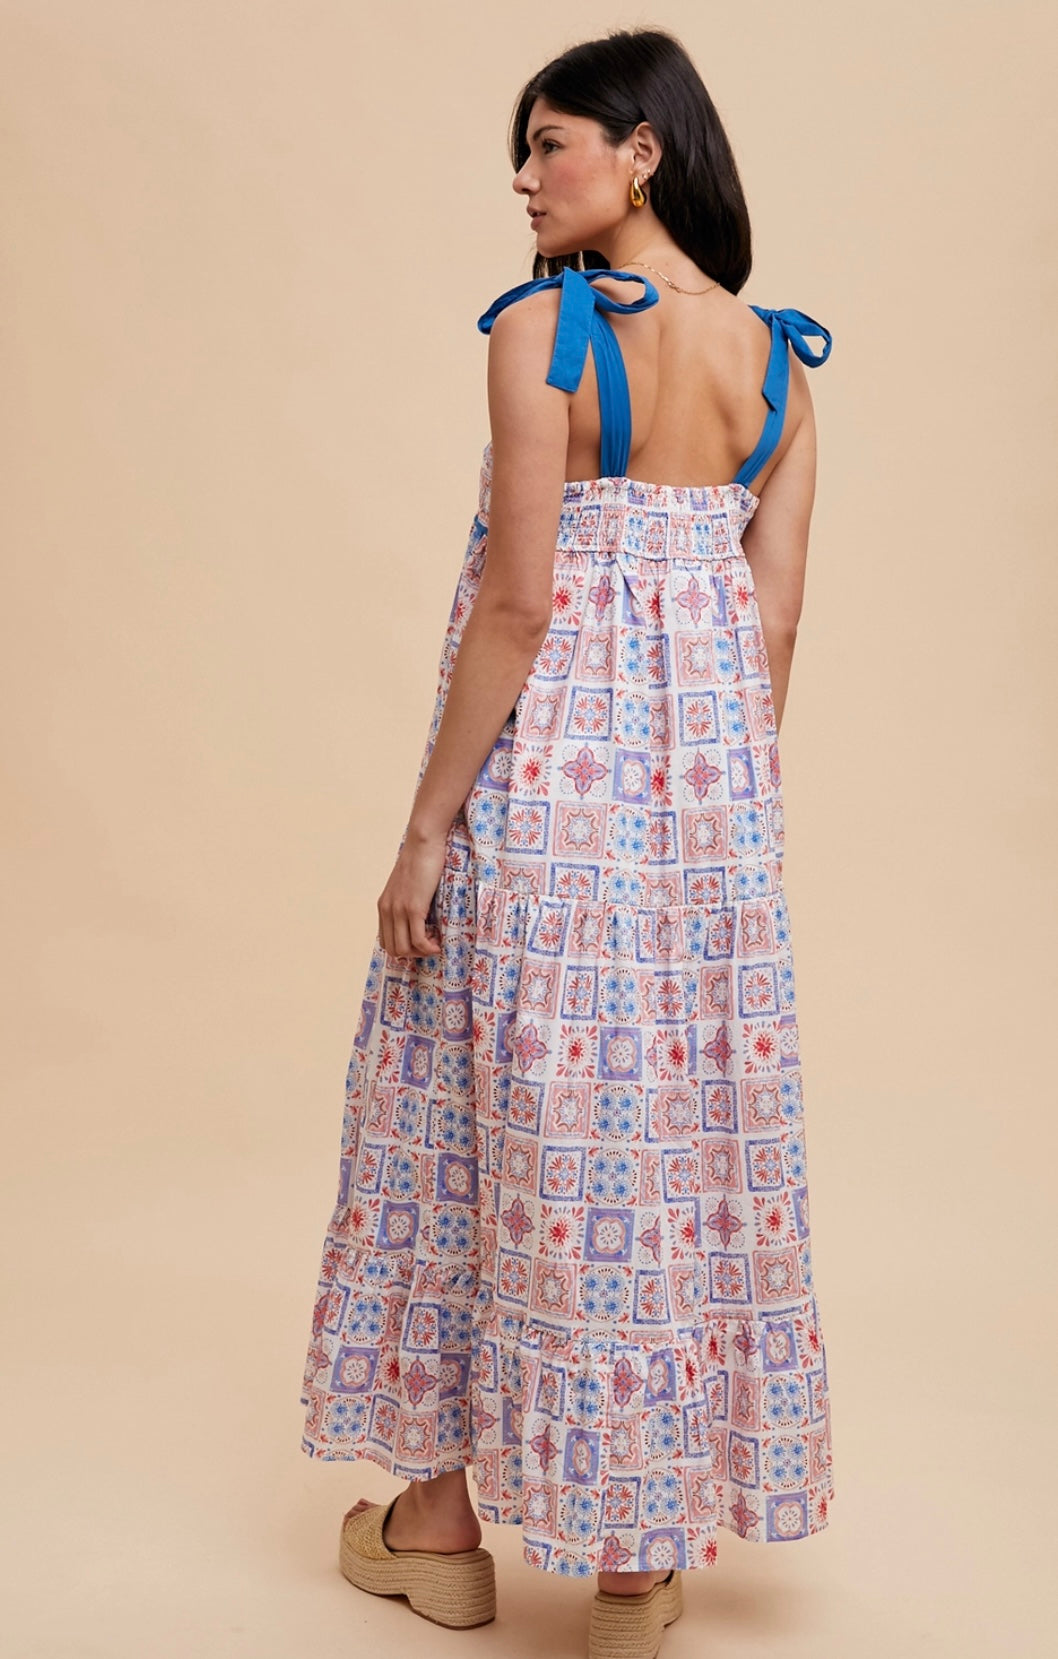 Tilework Print Sleeveless Cotton Maxi Dress